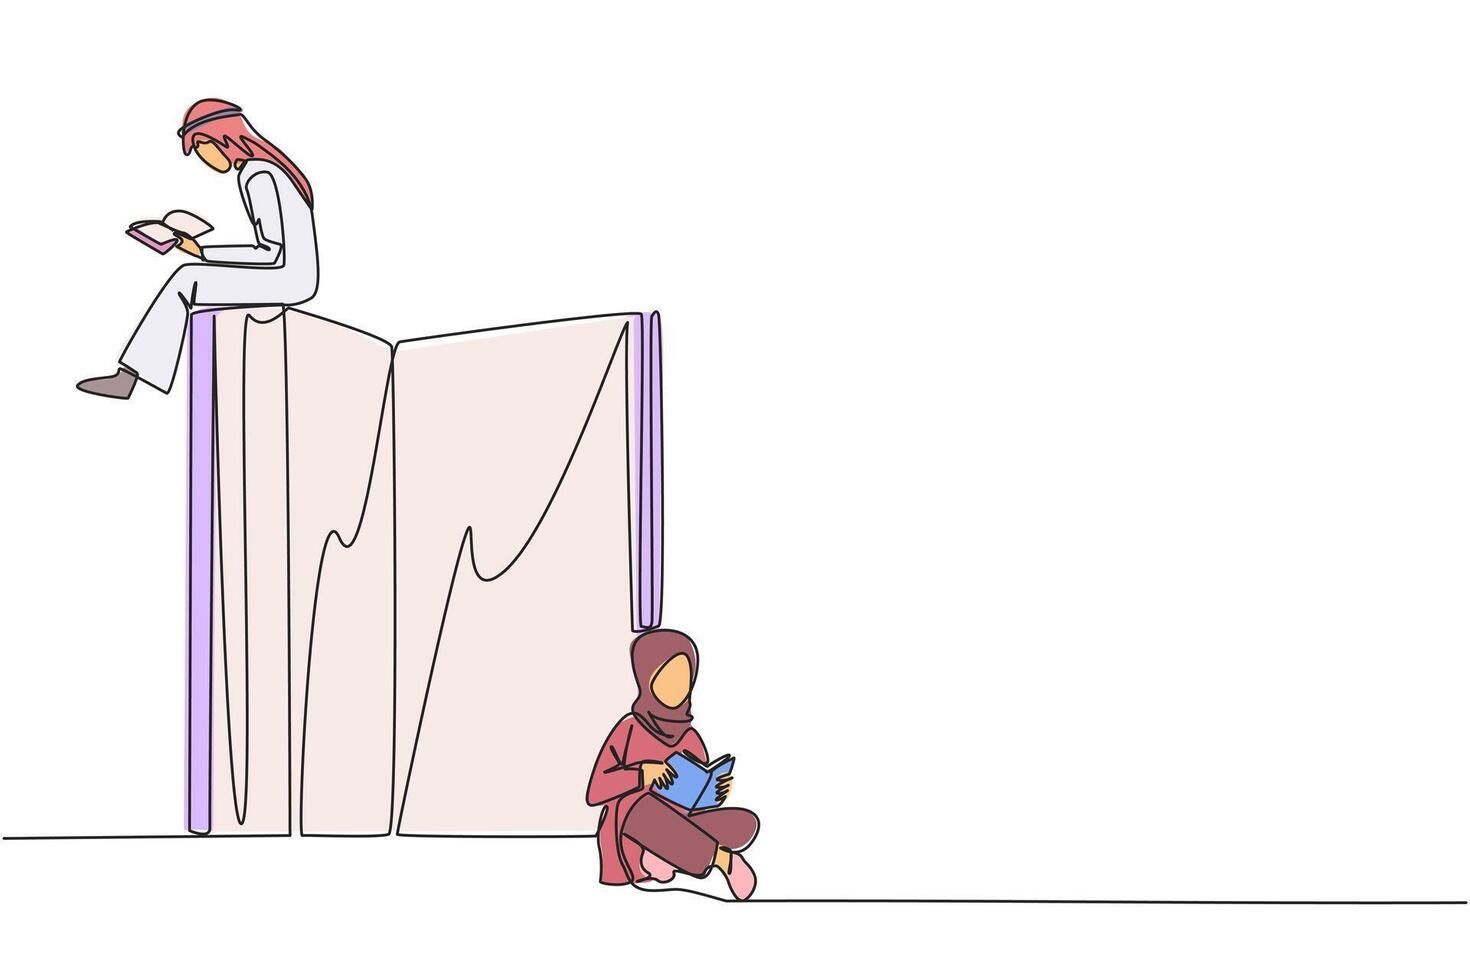 soltero continuo línea dibujo árabe hombre mujer sentado leyendo libros mientras el grande libro es abierto. grave y atención aprendizaje aumenta conocimiento. libro festival concepto. uno línea diseño ilustración vector